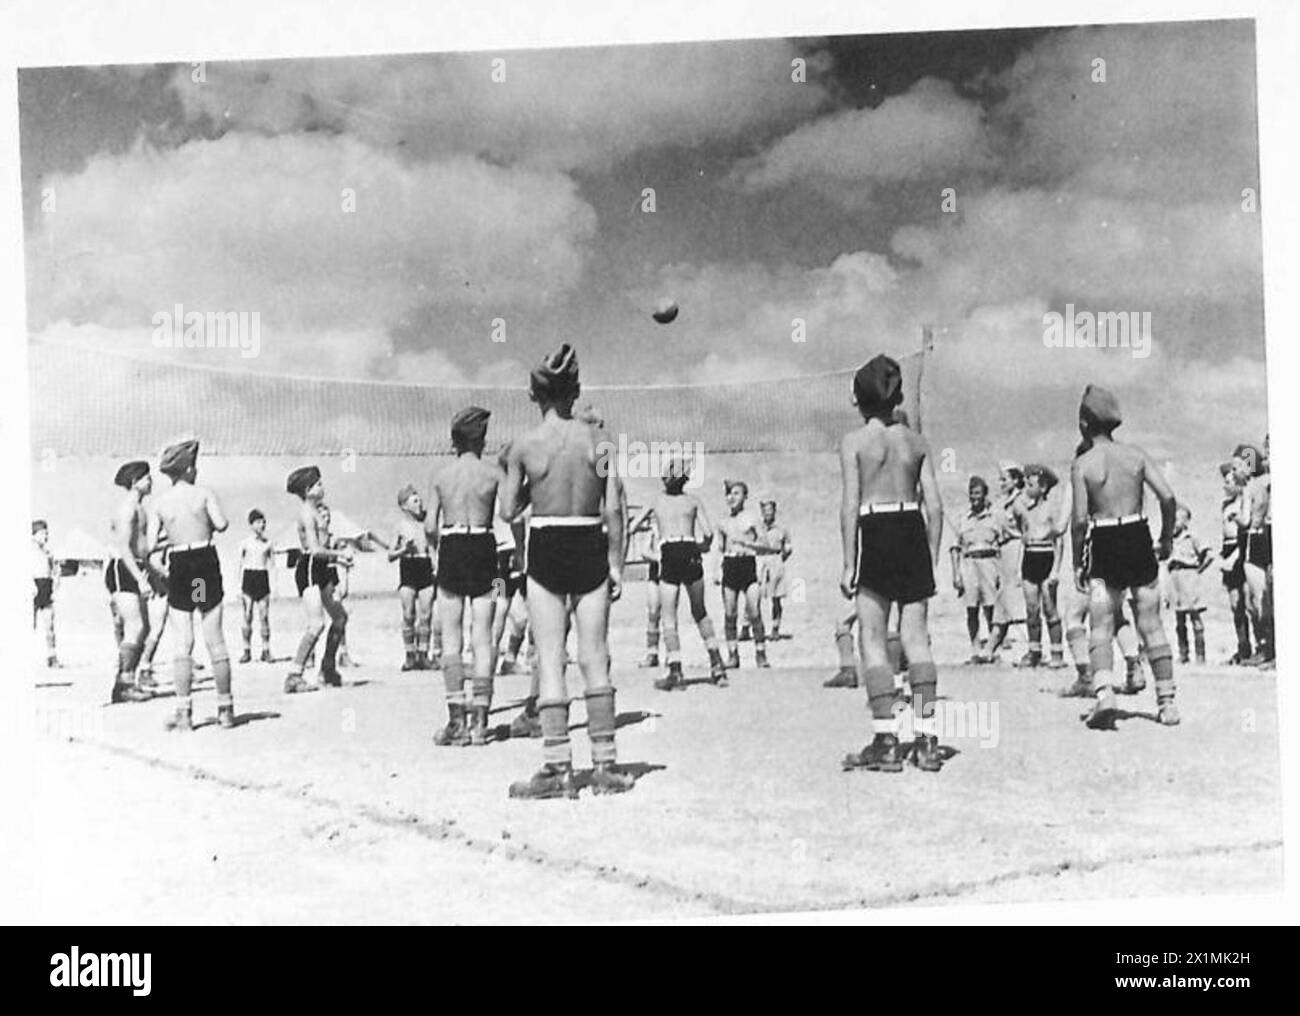 DIE POLNISCHE ARMEE IM NAHEN OSTEN, 1942-1943 - Eine Gruppe älterer Jungen, die Volleyball spielen. Bewegung und frische Luft wirkten mit ihrem Körper Wunder und ermöglichten es ihnen, sich vollständig von den Not und dem Hunger des sowjetischen Gulag zu erholen. Nach der deutsch-sowjetischen Invasion Polens wurden viele Polen in verschiedene Lager im sowjetischen Gulag deportiert. Unter ihnen waren viele Jungen jeden Alters. Nach der Unterzeichnung des Sikorski-Mayski-Abkommens 1941 wurden viele Überlebende - Männer, Frauen, Kinder - aus der Sowjetunion entlassen und über Persien nach Palästina evakuiert Stockfoto